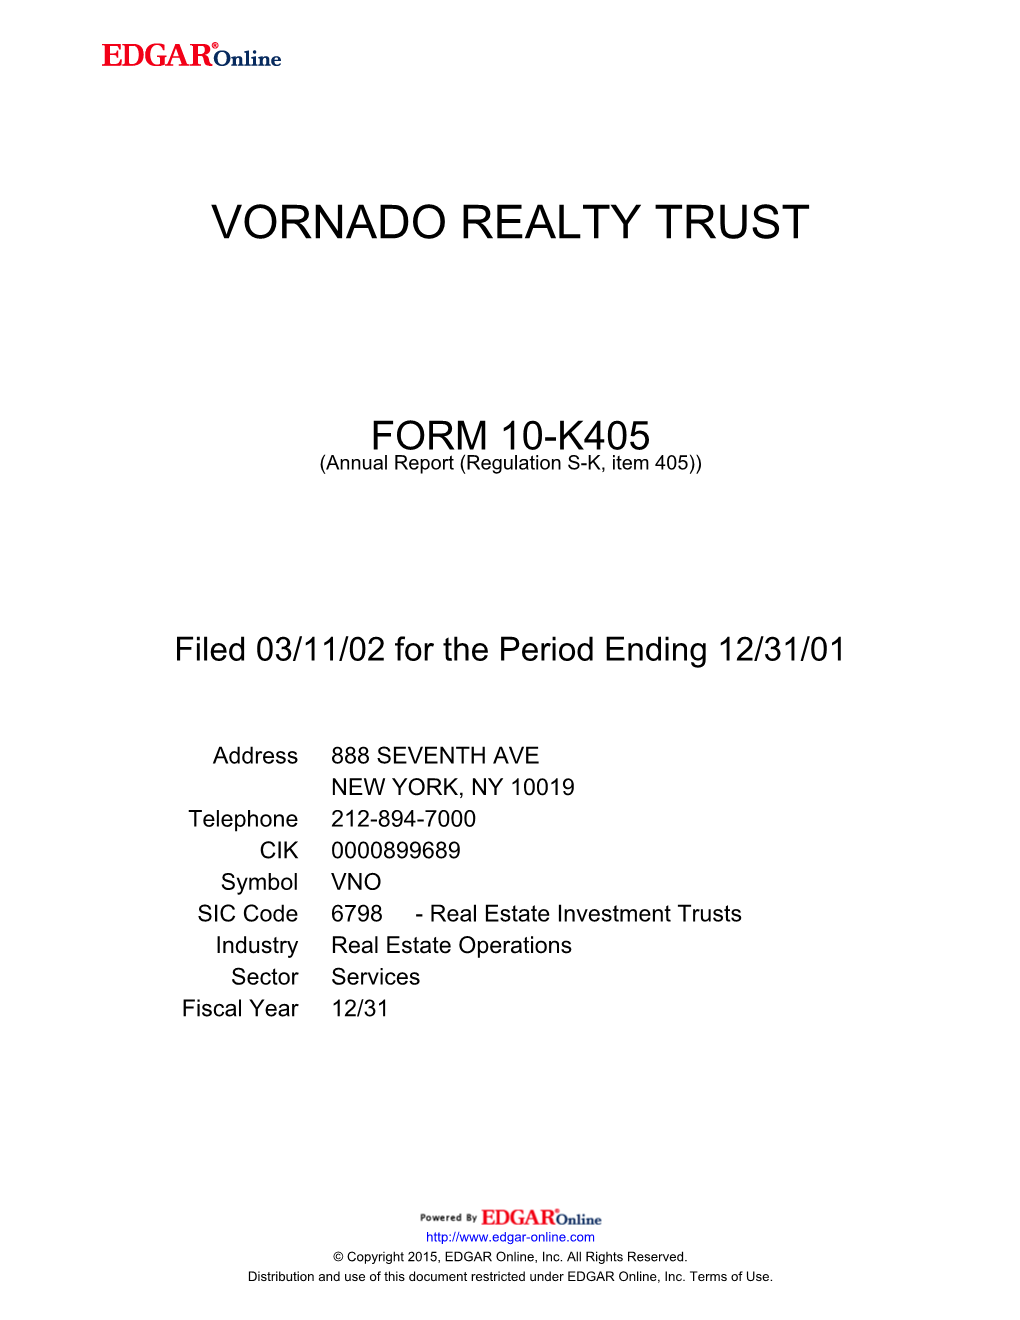 Vornado Realty Trust Form 10-K405